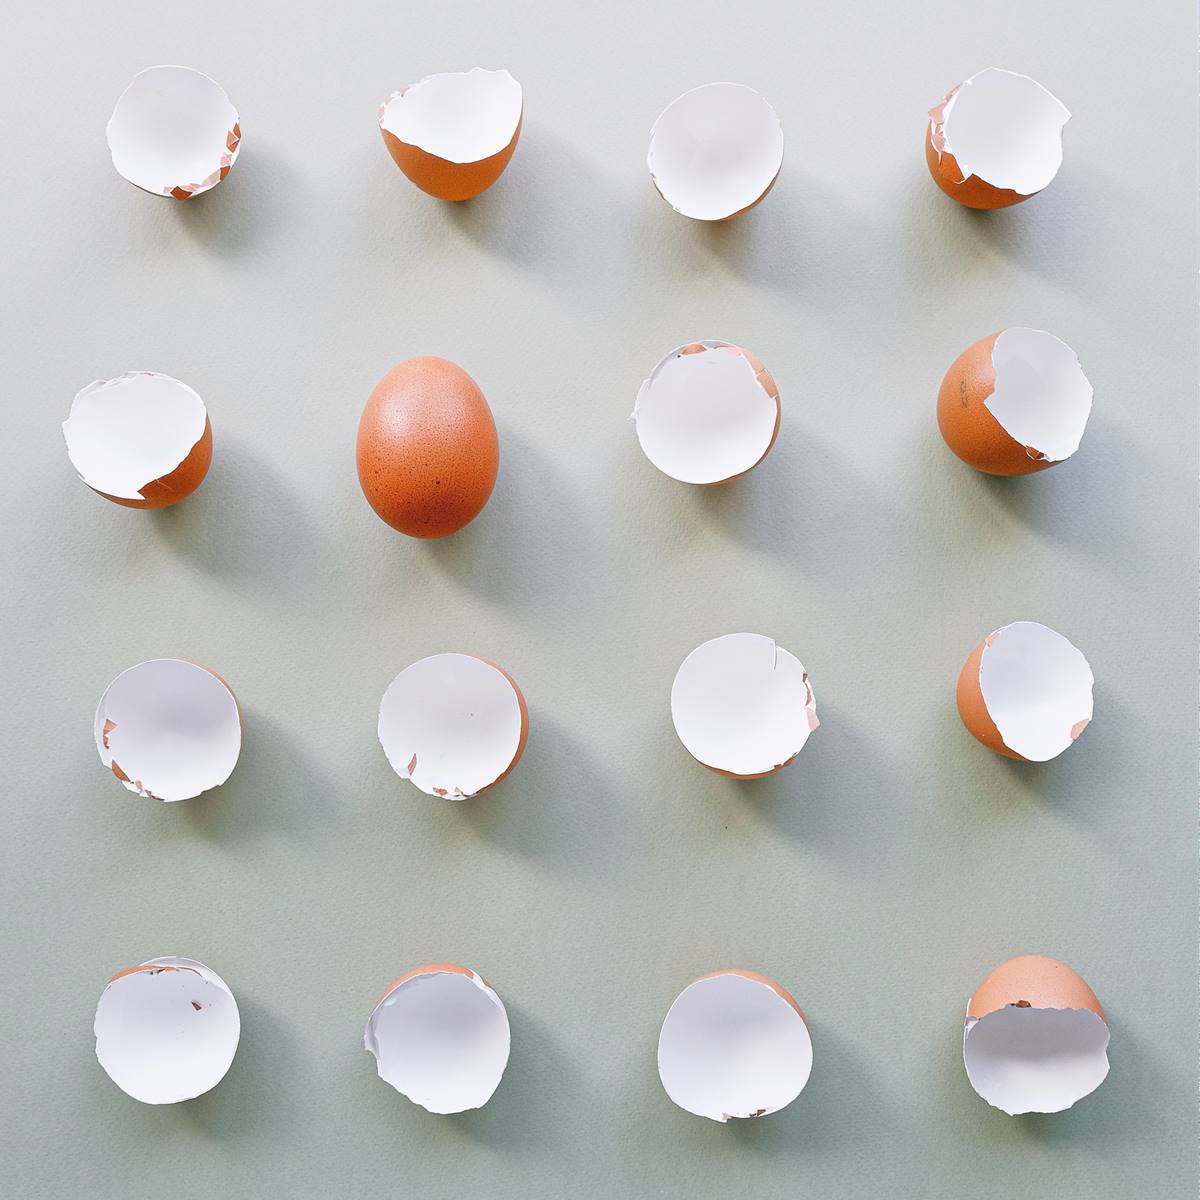 Cáscaras de huevo y un huevo entero